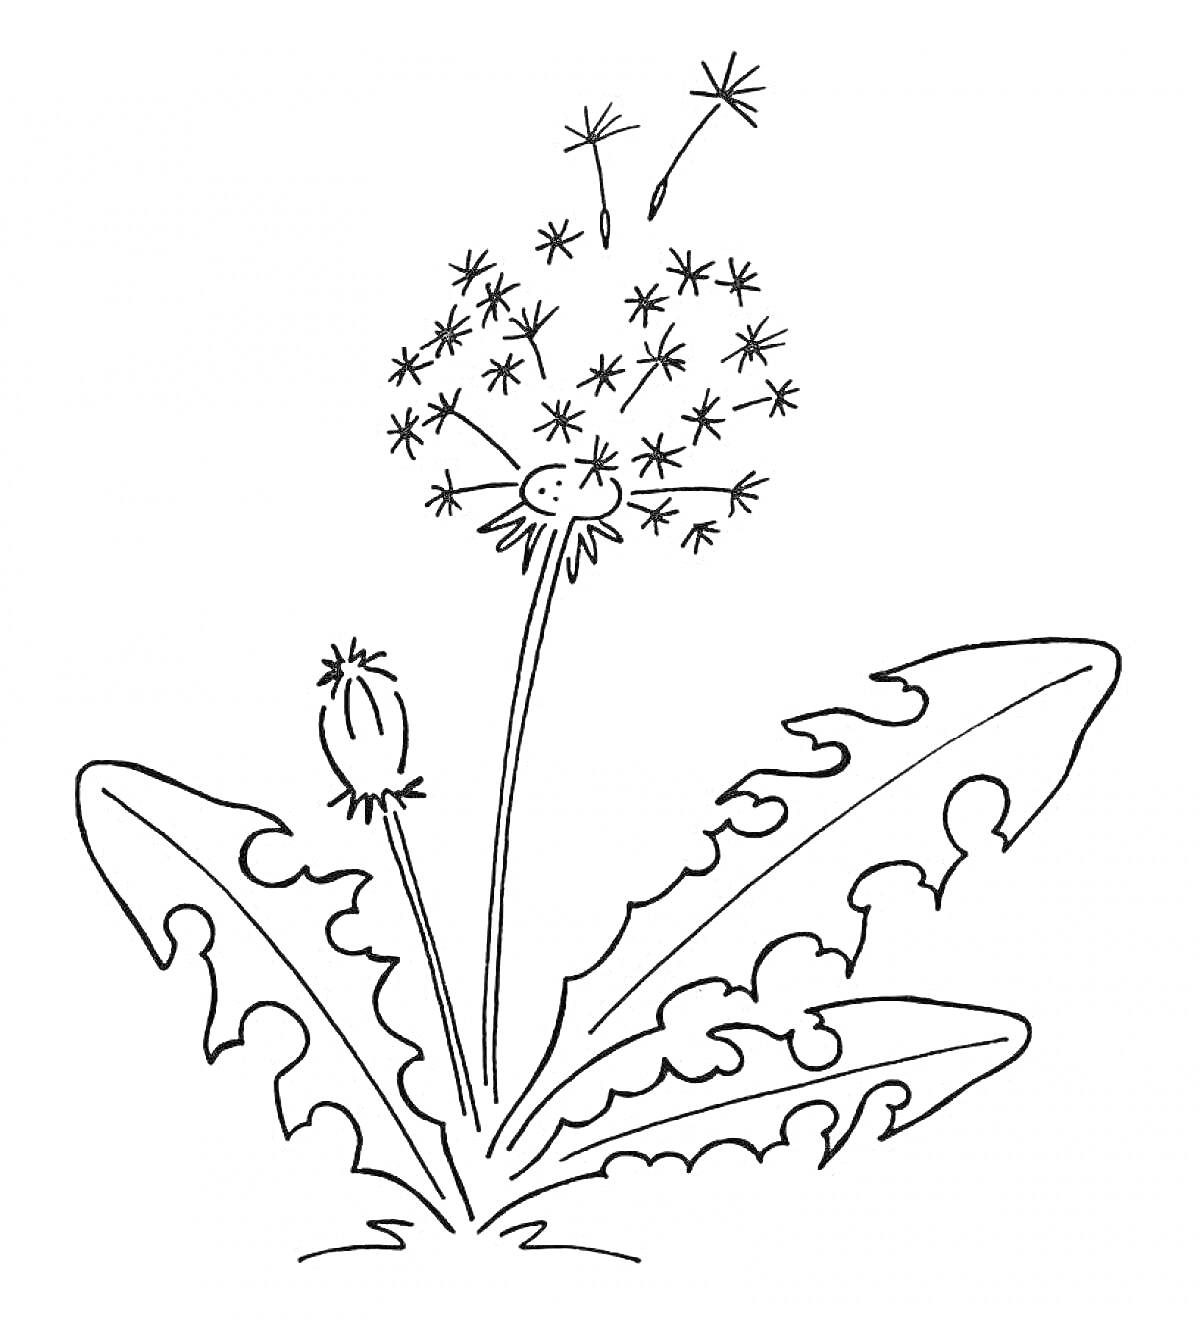 Раскраска Распустившийся и пушистый одуванчик с семенами, бутоном и листьями